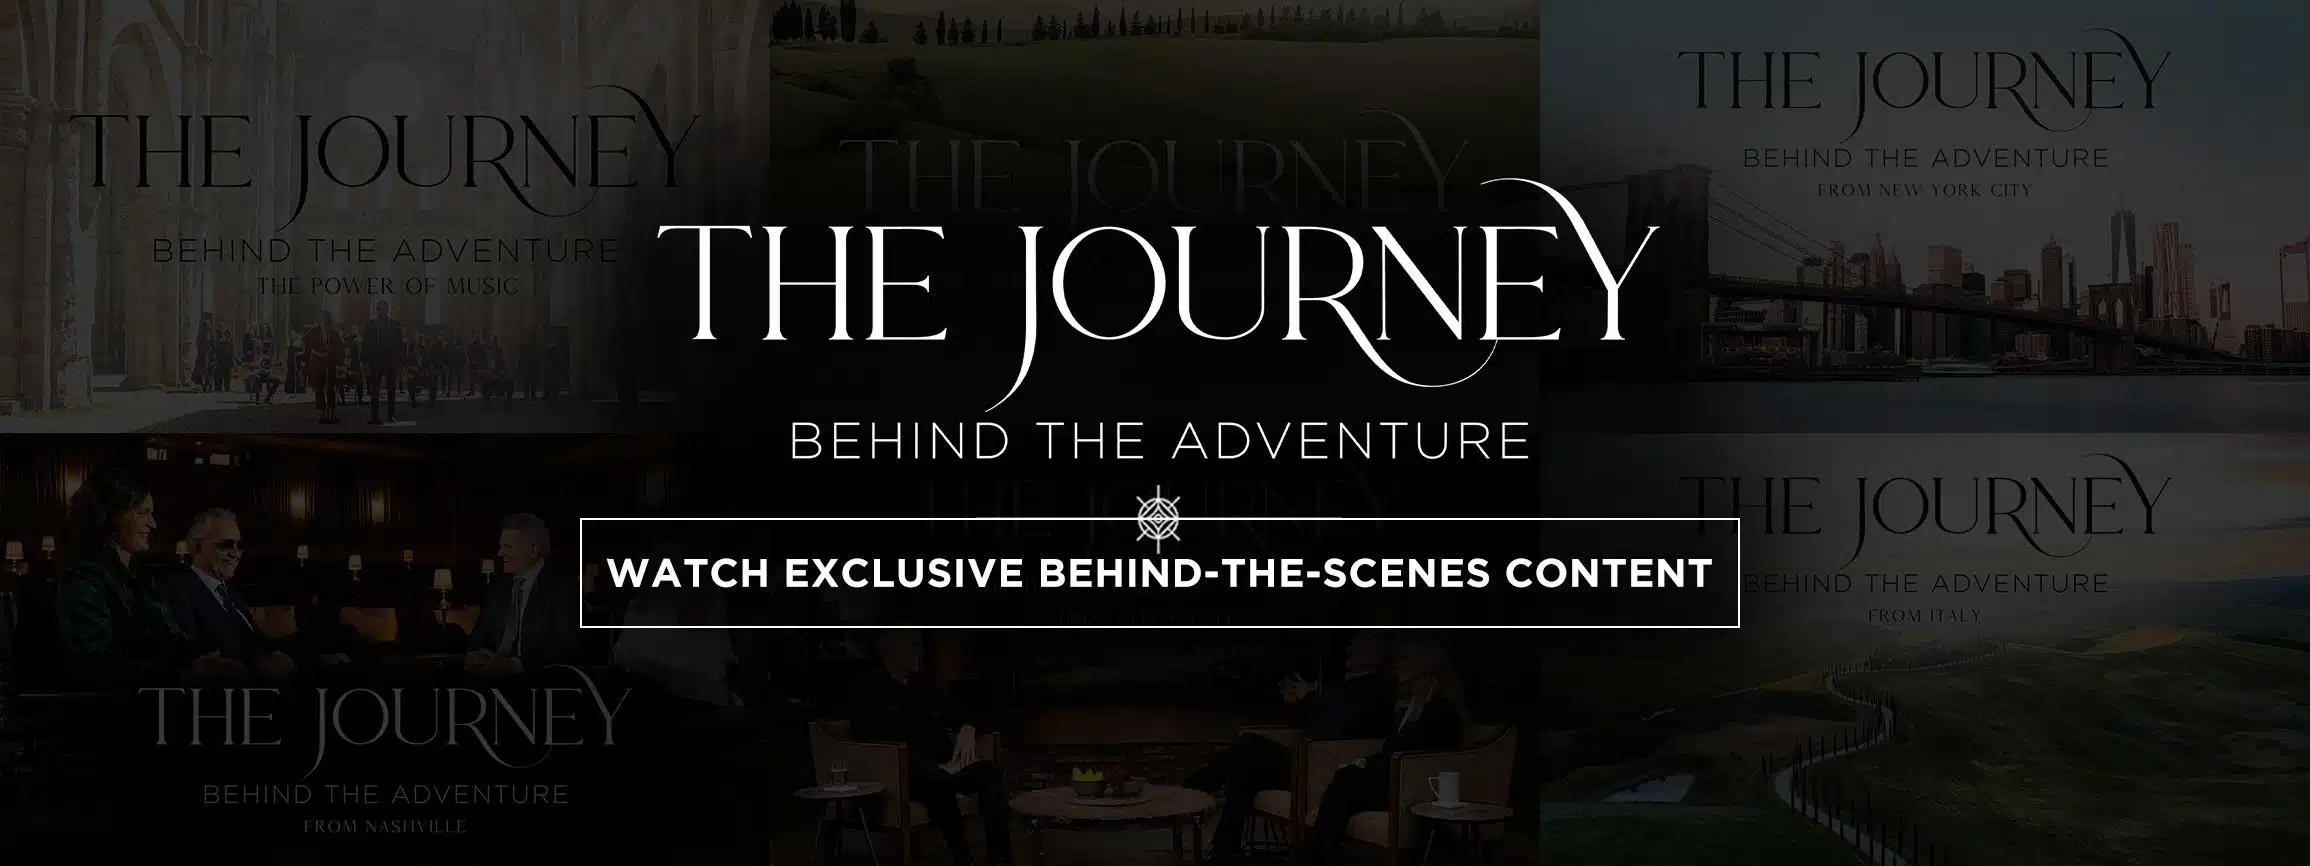 Watch exclusive behind-the-scenes content!